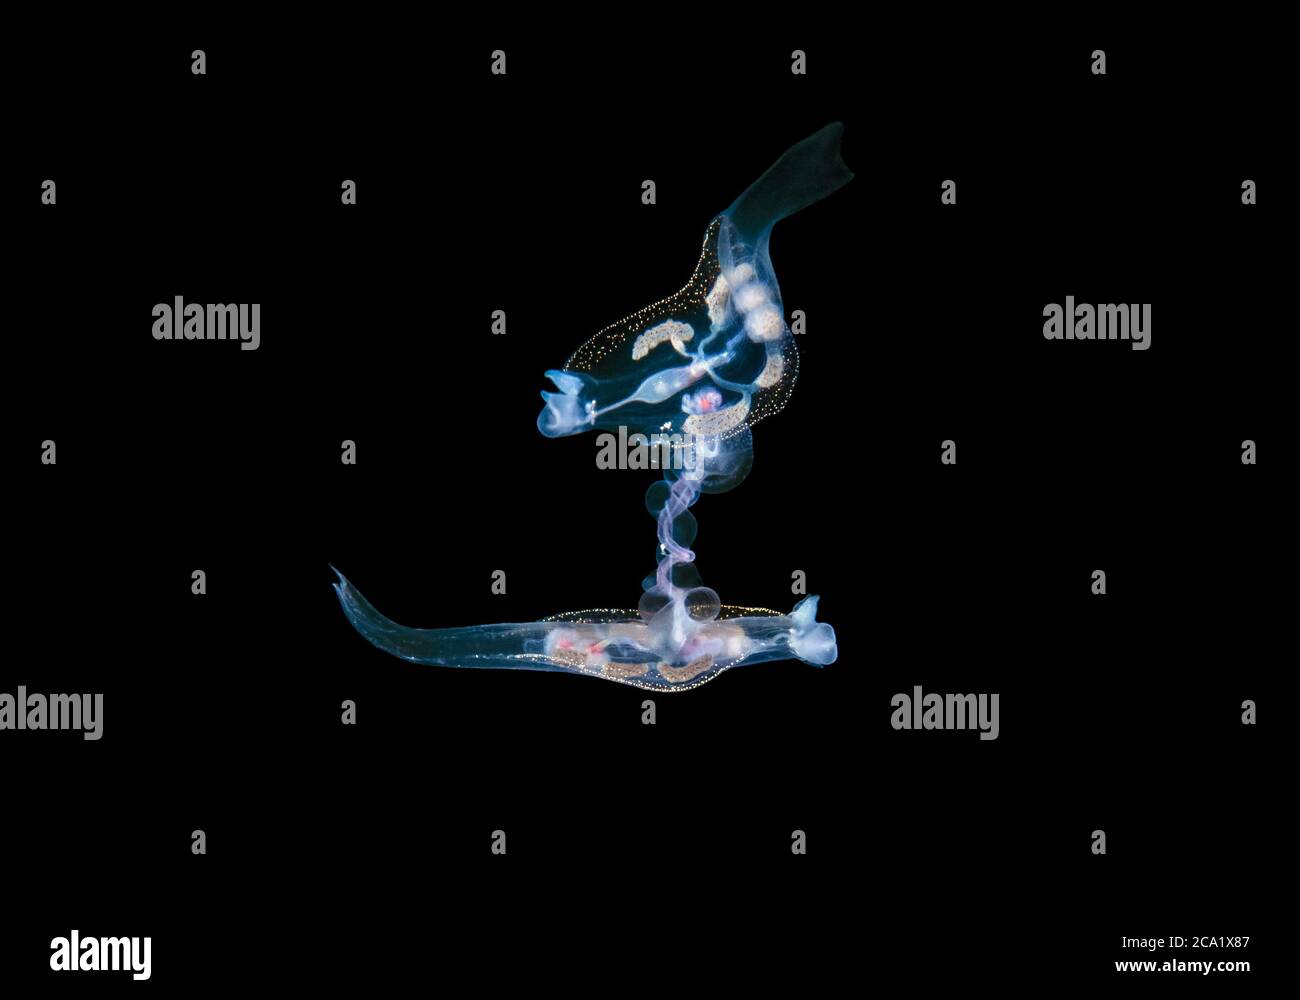 Pelágicos nudibranch, Philliroe especies, pareja, apareamiento, por primera vez fotografiado durante la inmersión en aguas negras cerca de la superficie en 600+ pies de Wat Foto de stock